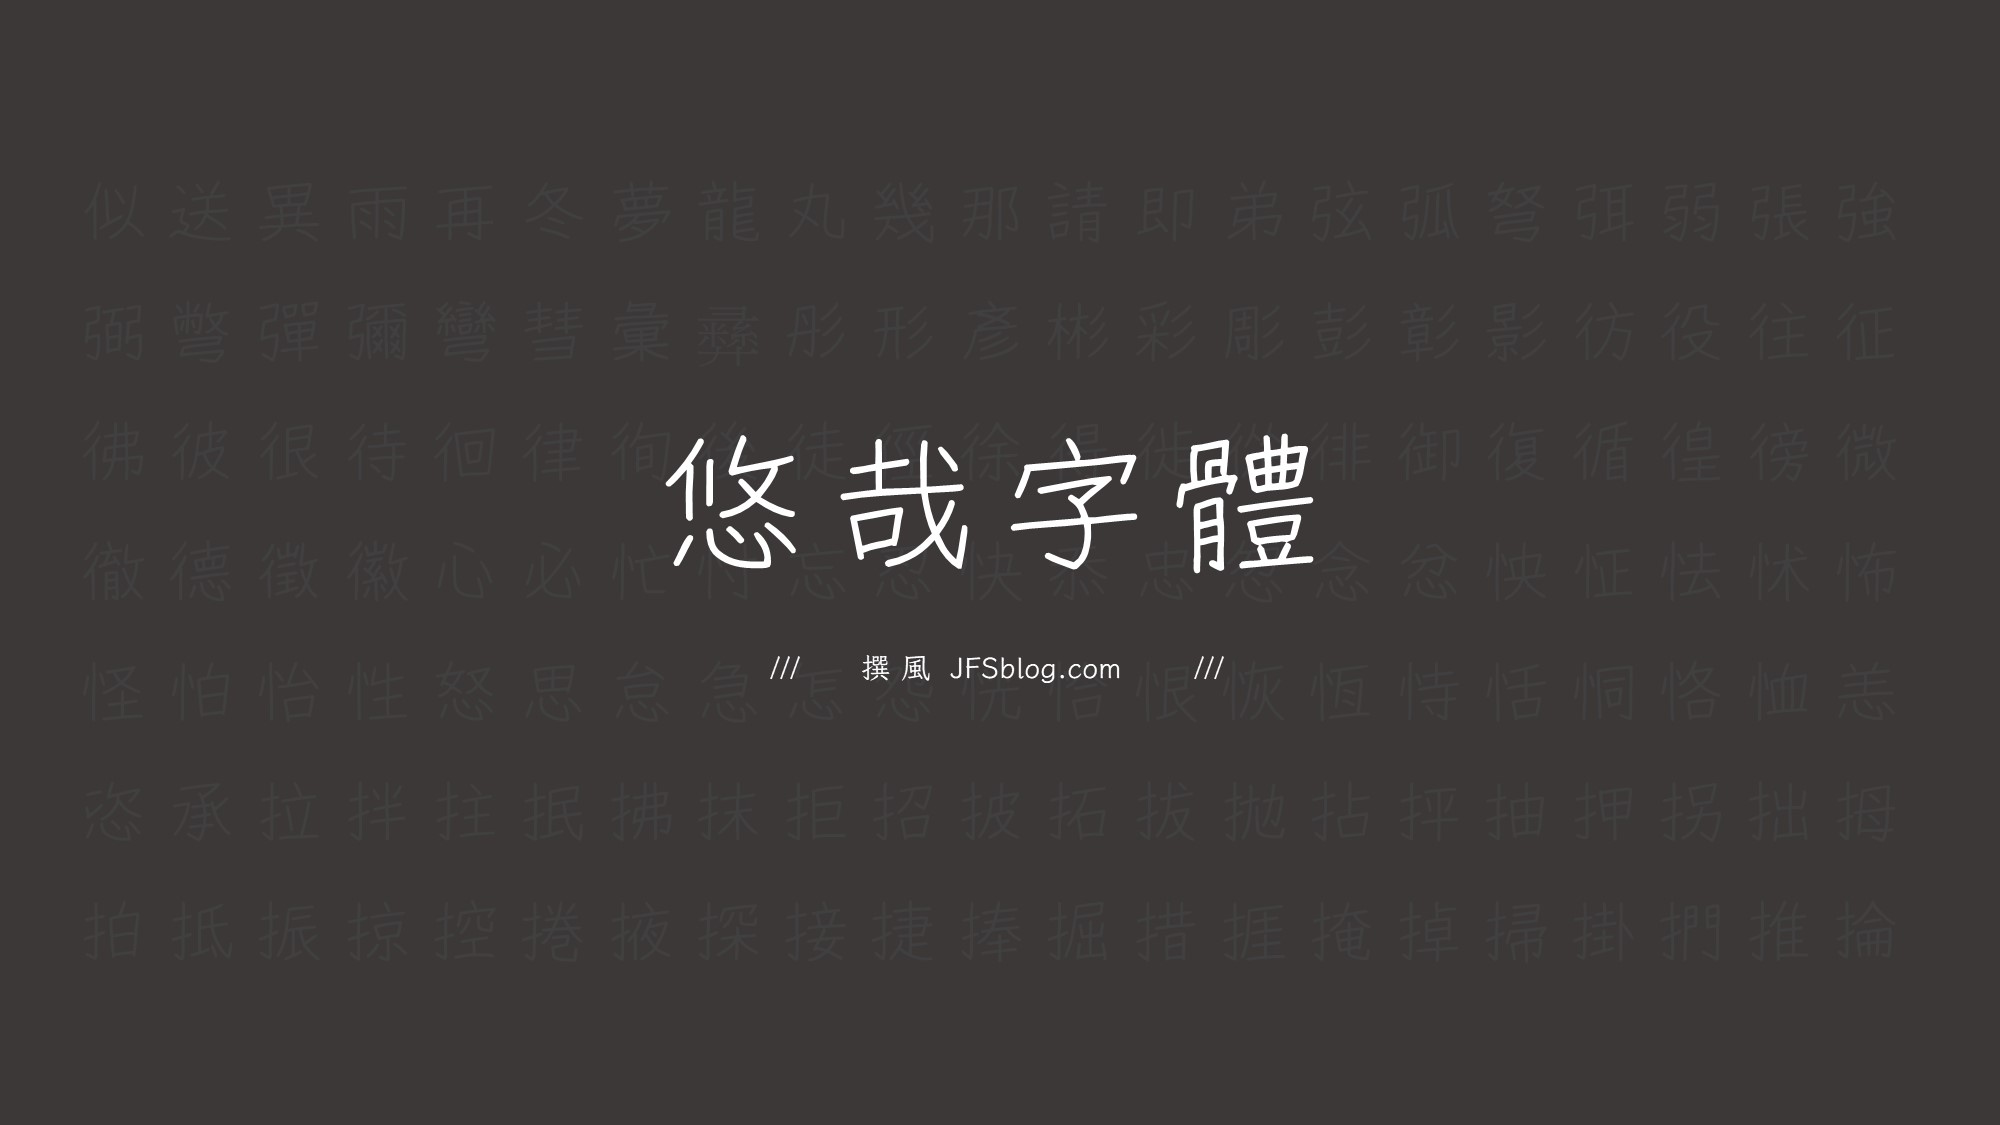 免費字型「悠哉字體」如何下載？補全簡繁漢字的手寫風格字型